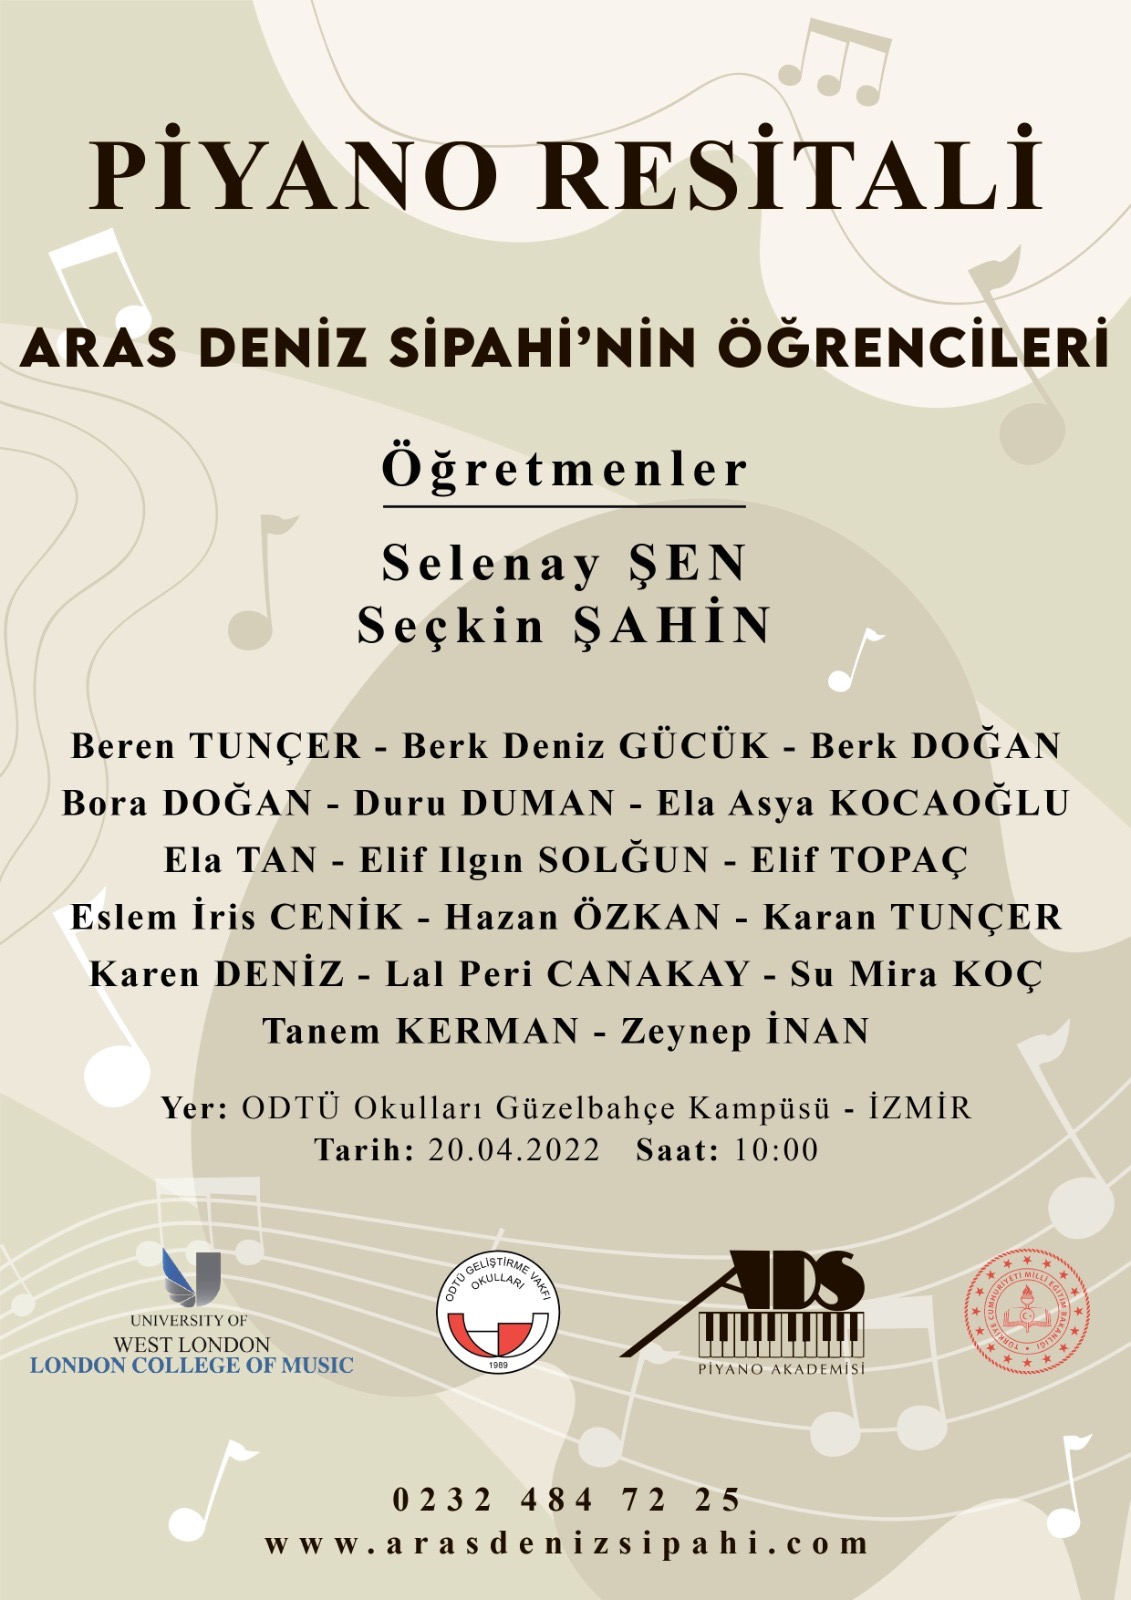 ADS Piyano Akademisi Öğrencileri ODTÜ Okulları Güzelbahçe Kampüsü Sahnesi'nde!